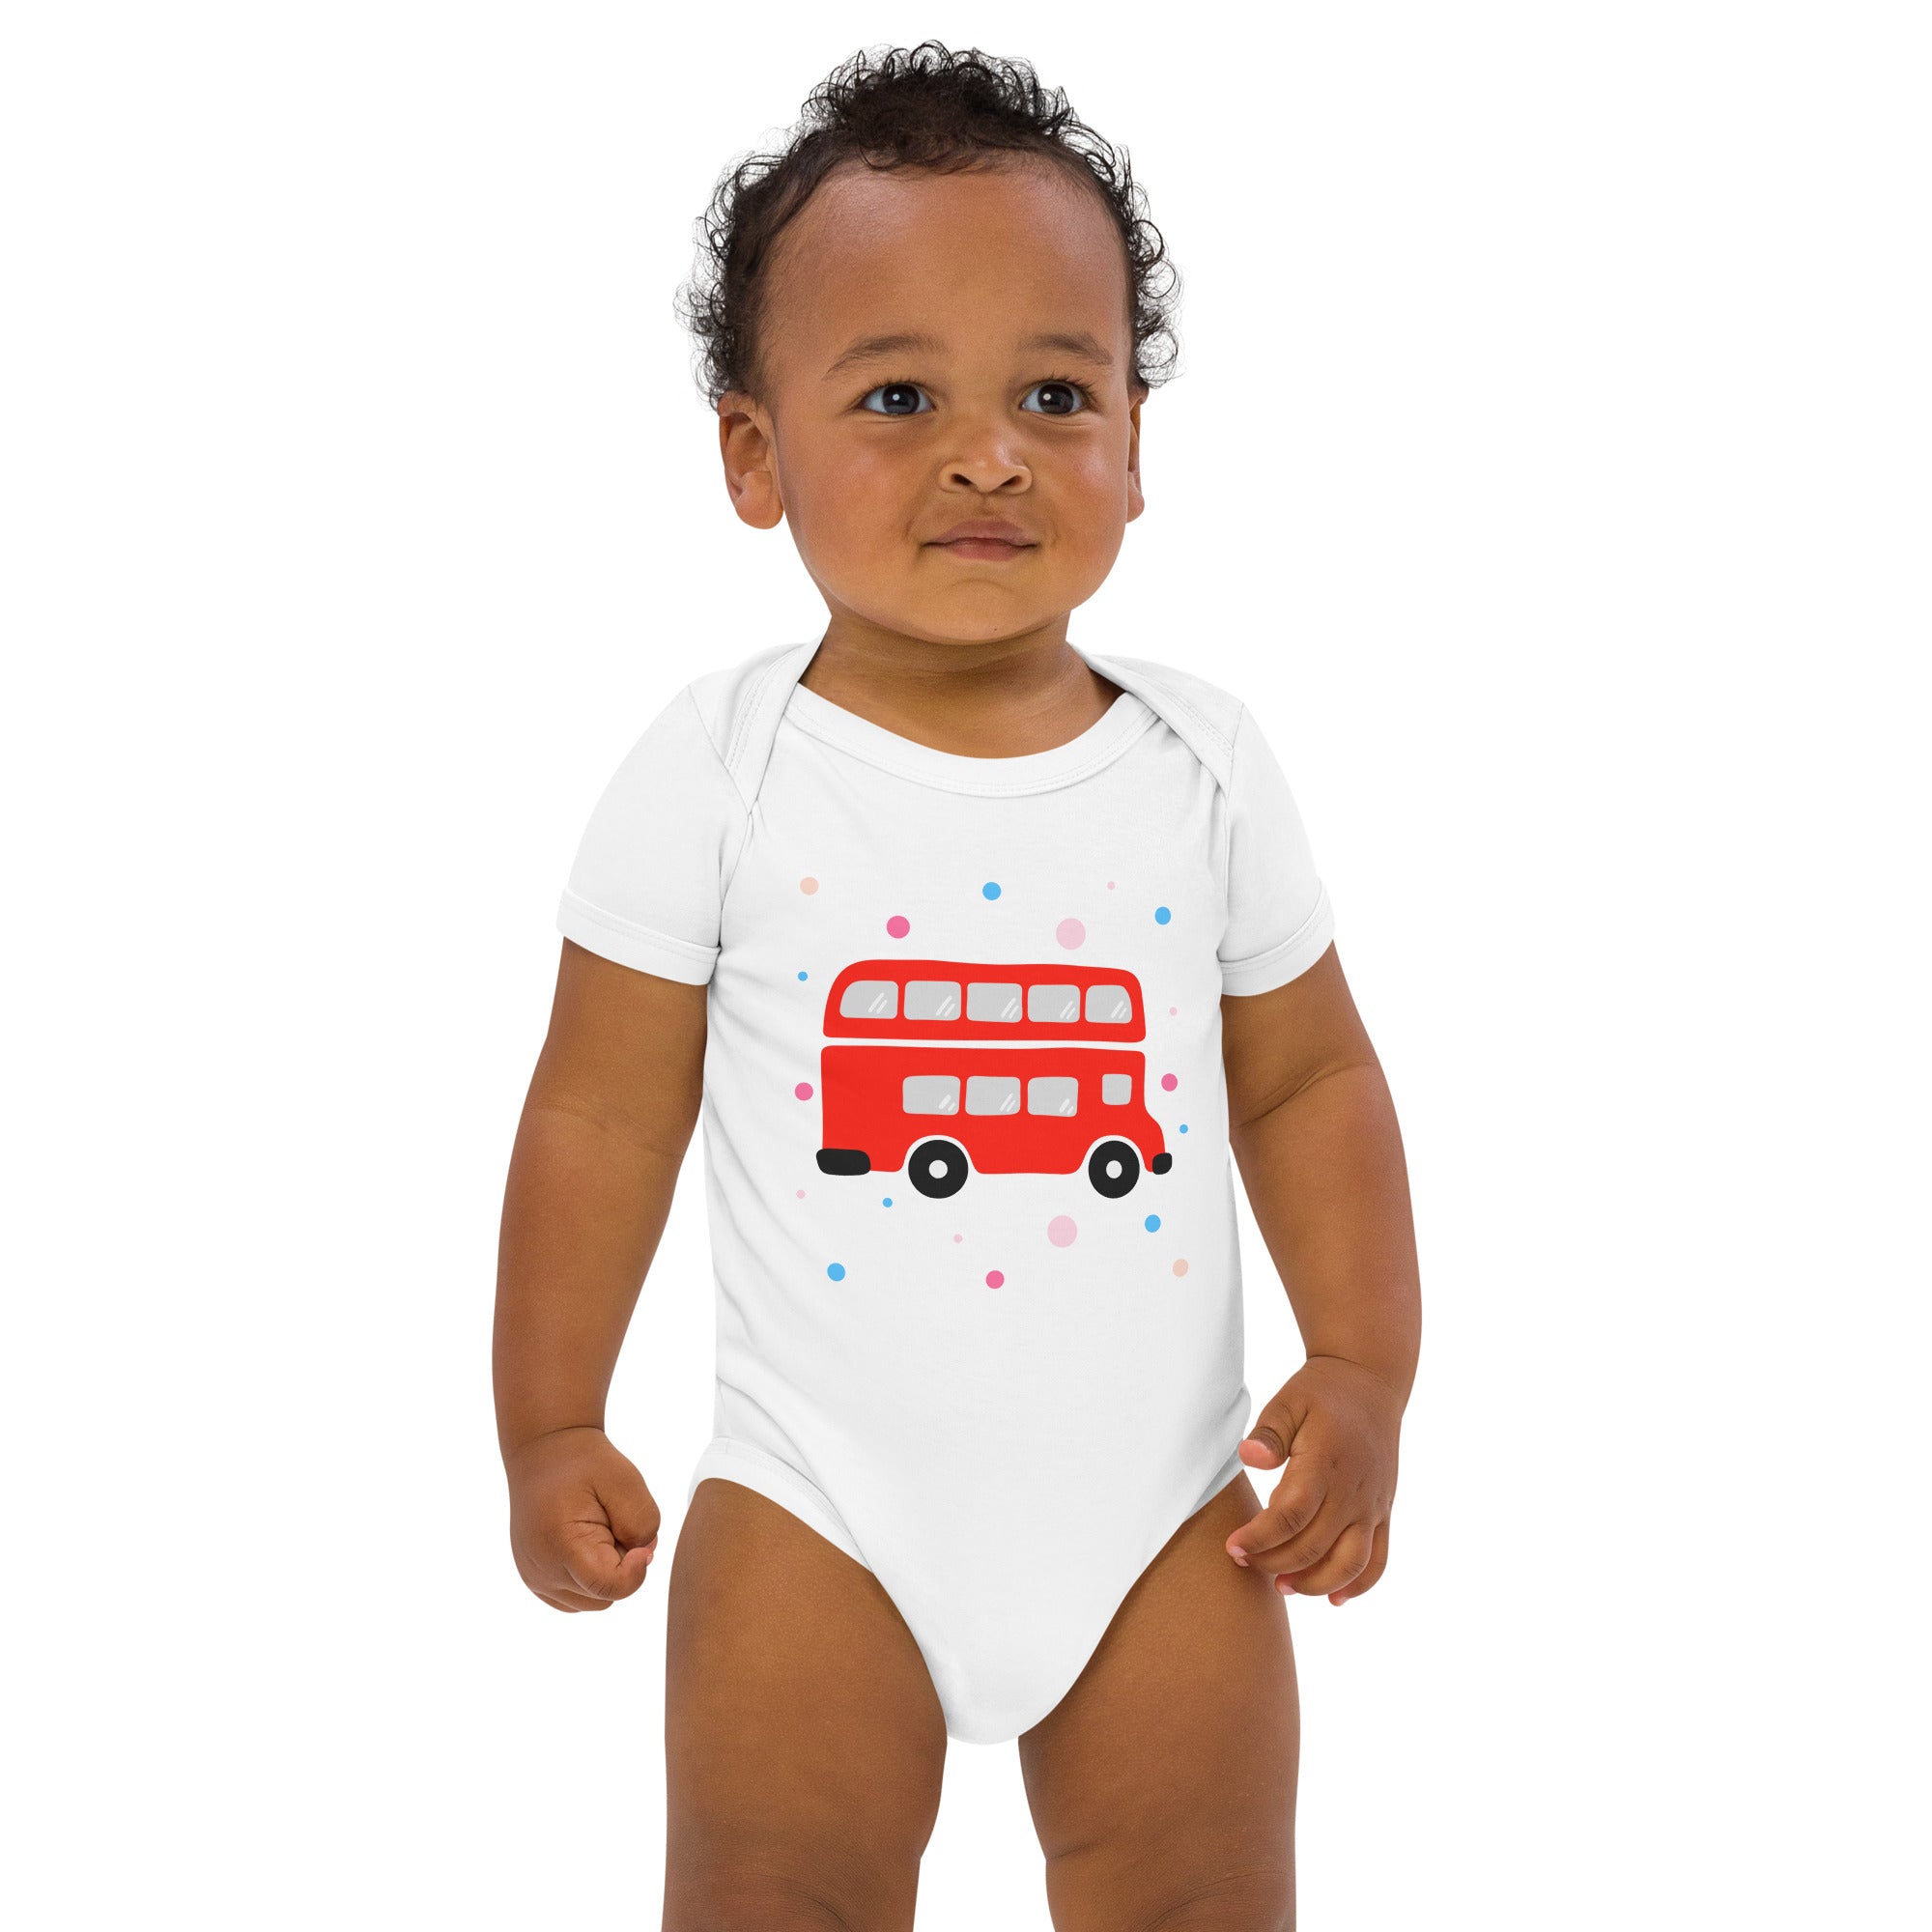 London Doodles - Bus - Organic Cotton Baby Bodysuit